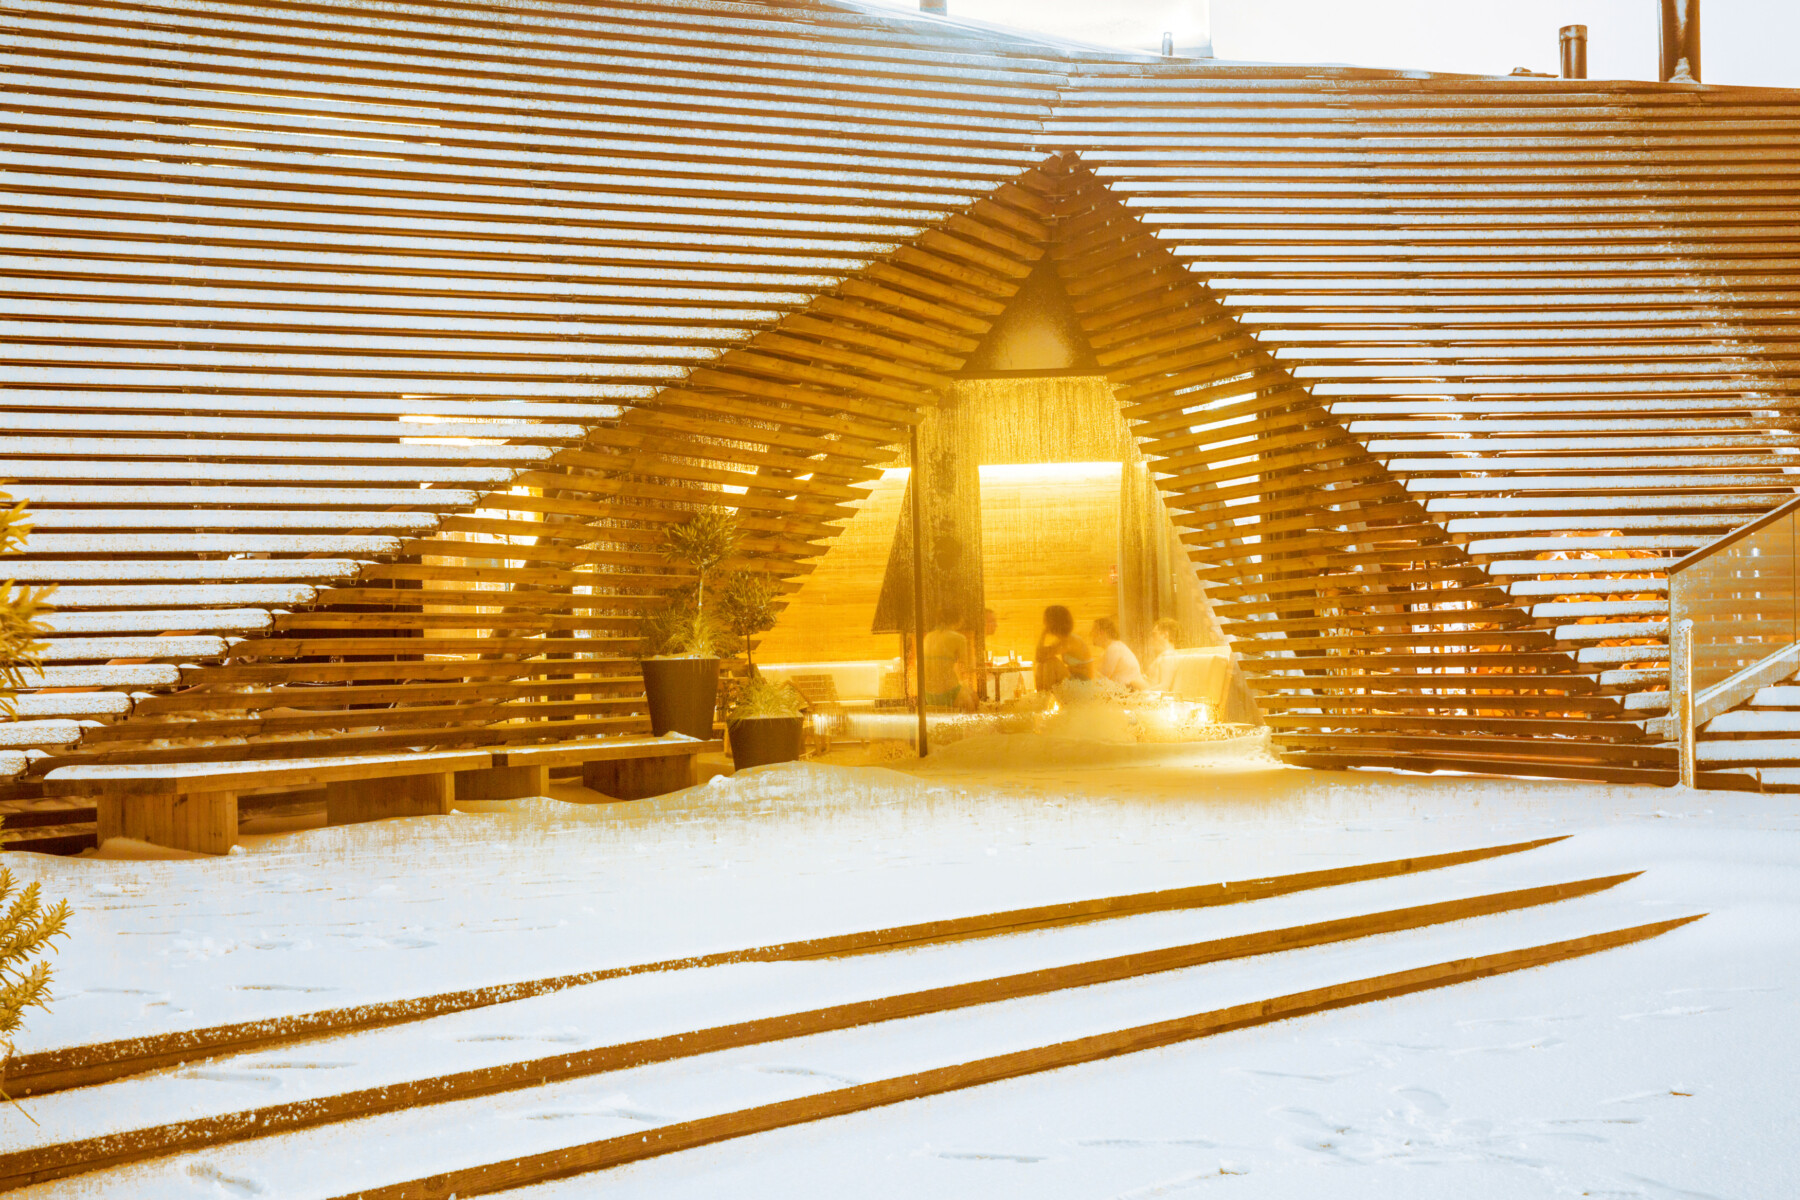 Деревянное здание с треугольной аркой покрыто снегом; в окне видны люди, уютно расположившиеся внутри.